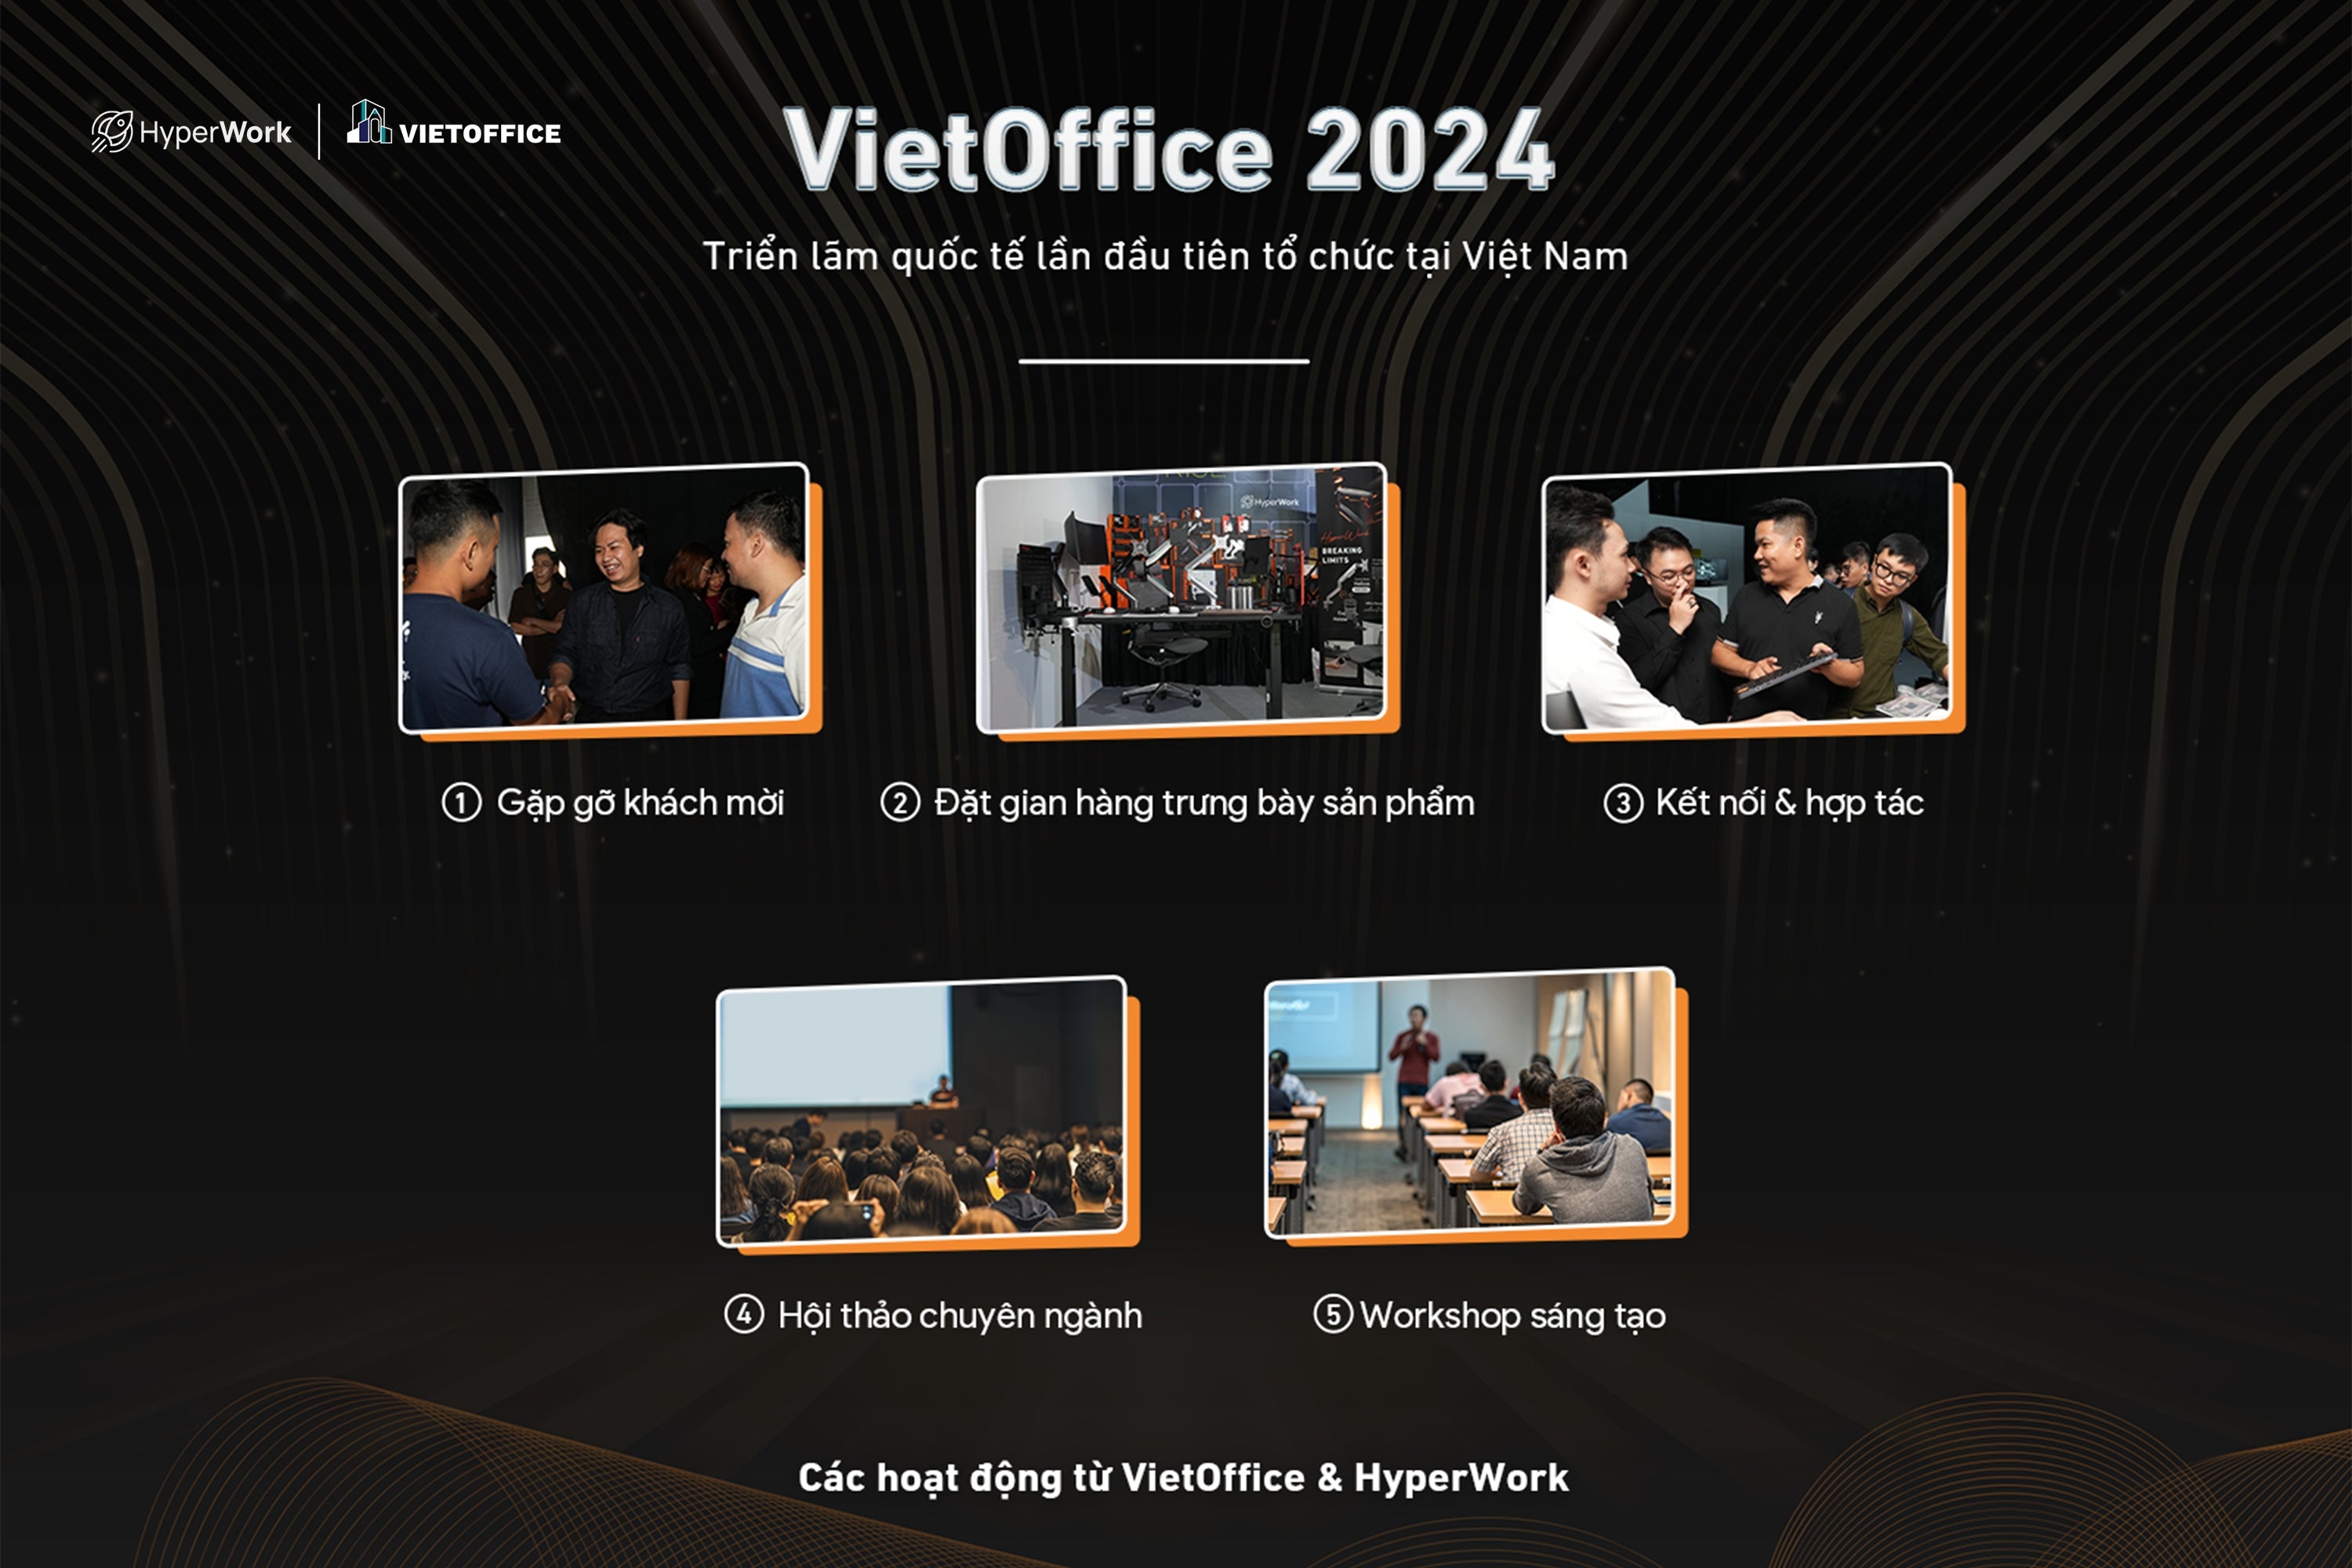 HyperWork tham gia VietOffice 2024 - triển lãm quy mô quốc tế, lần đầu tiên tổ chức tại Việt Nam - HyperWork